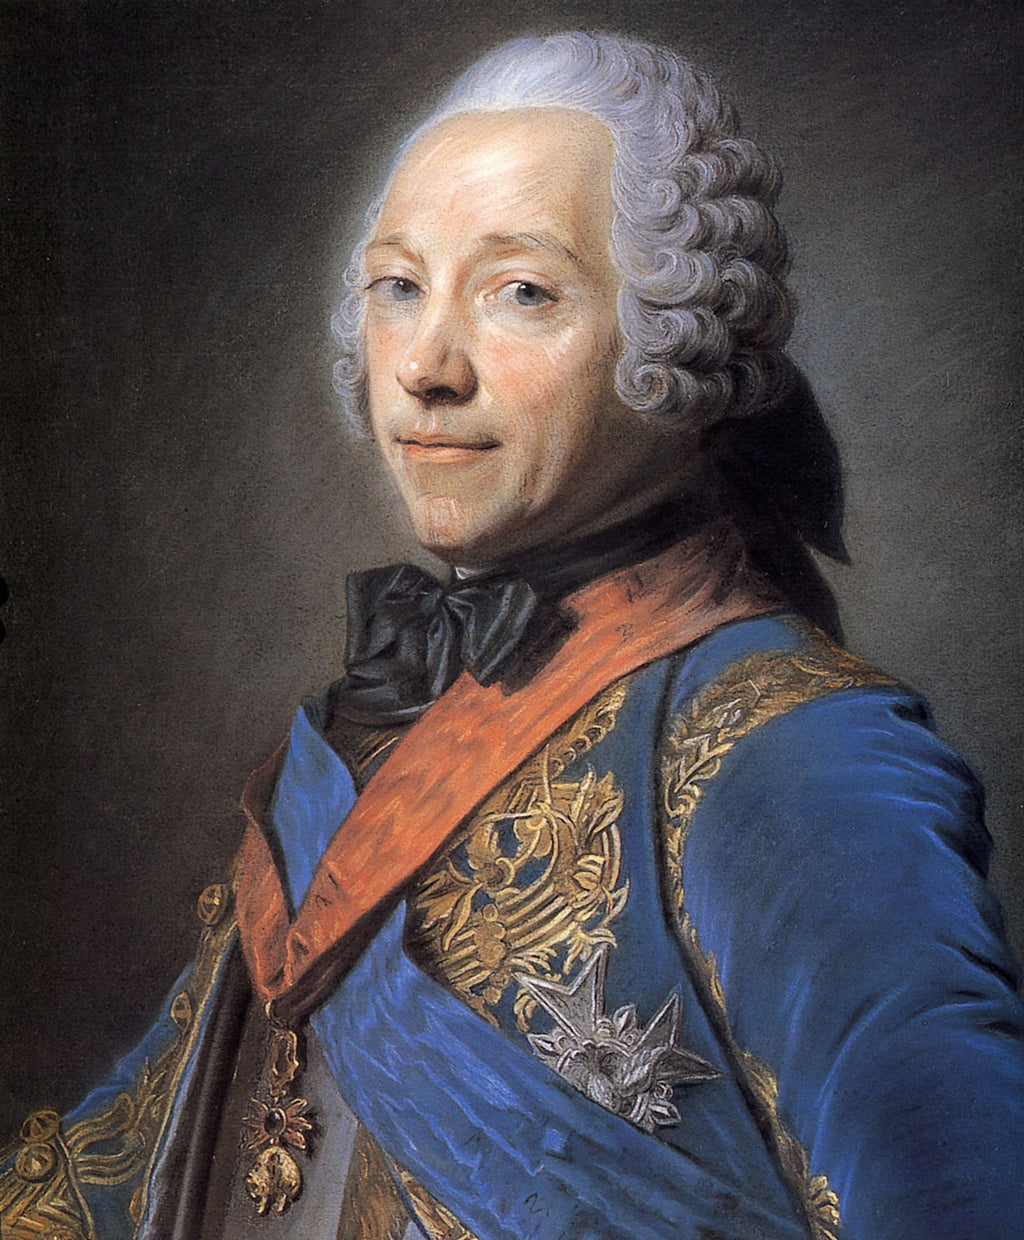 Charles Louis Fouquet, duque de Belle Isle